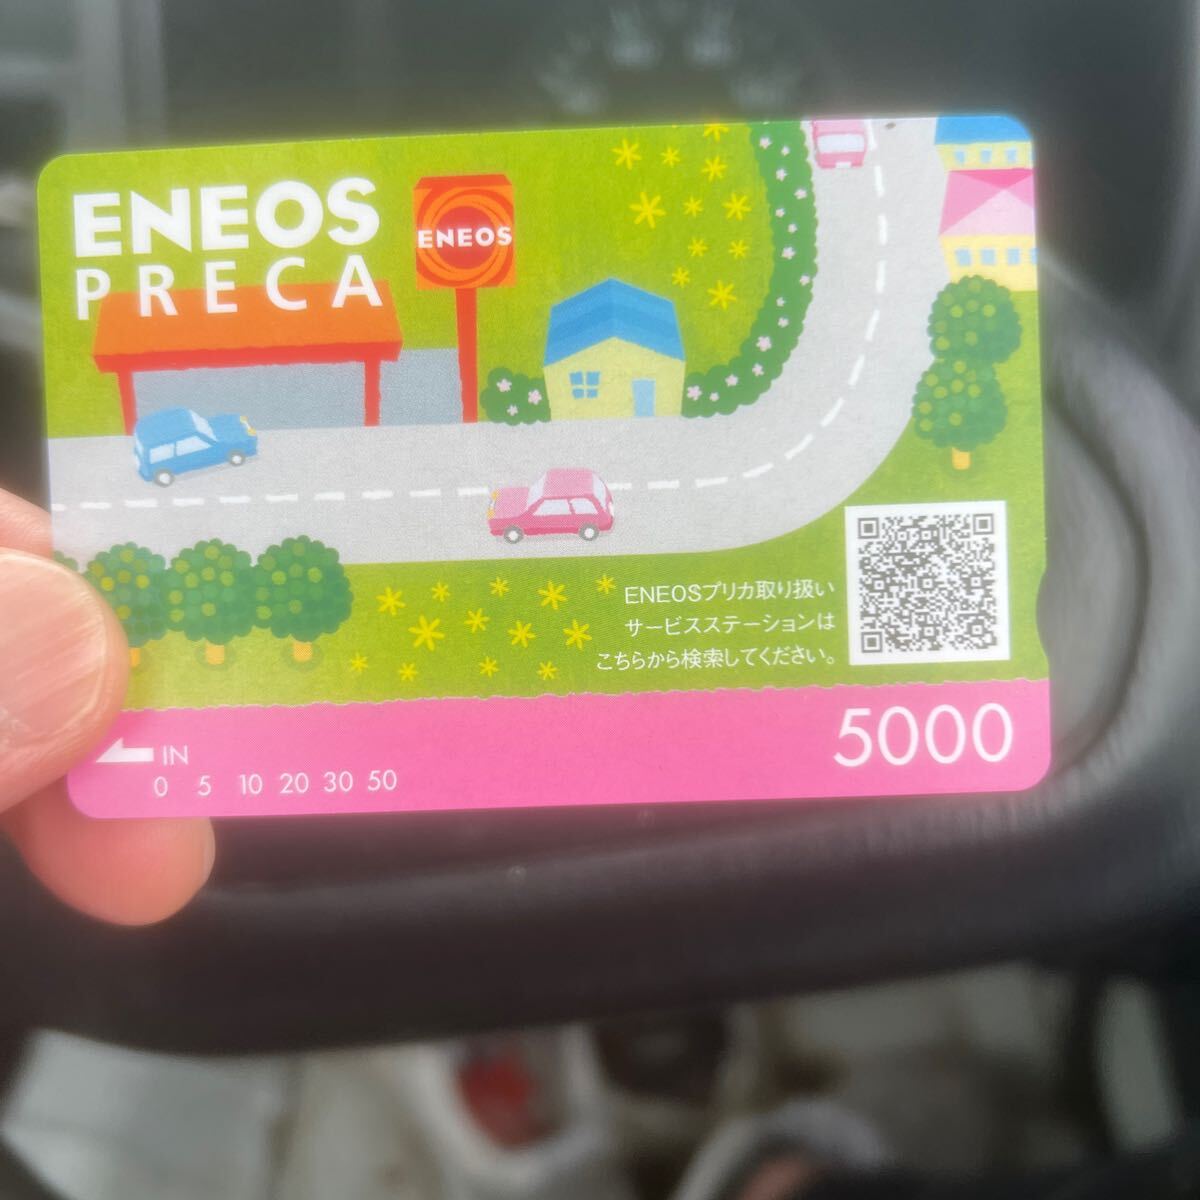 ENEOSプリカ ENEOS プリペイドカード の画像1